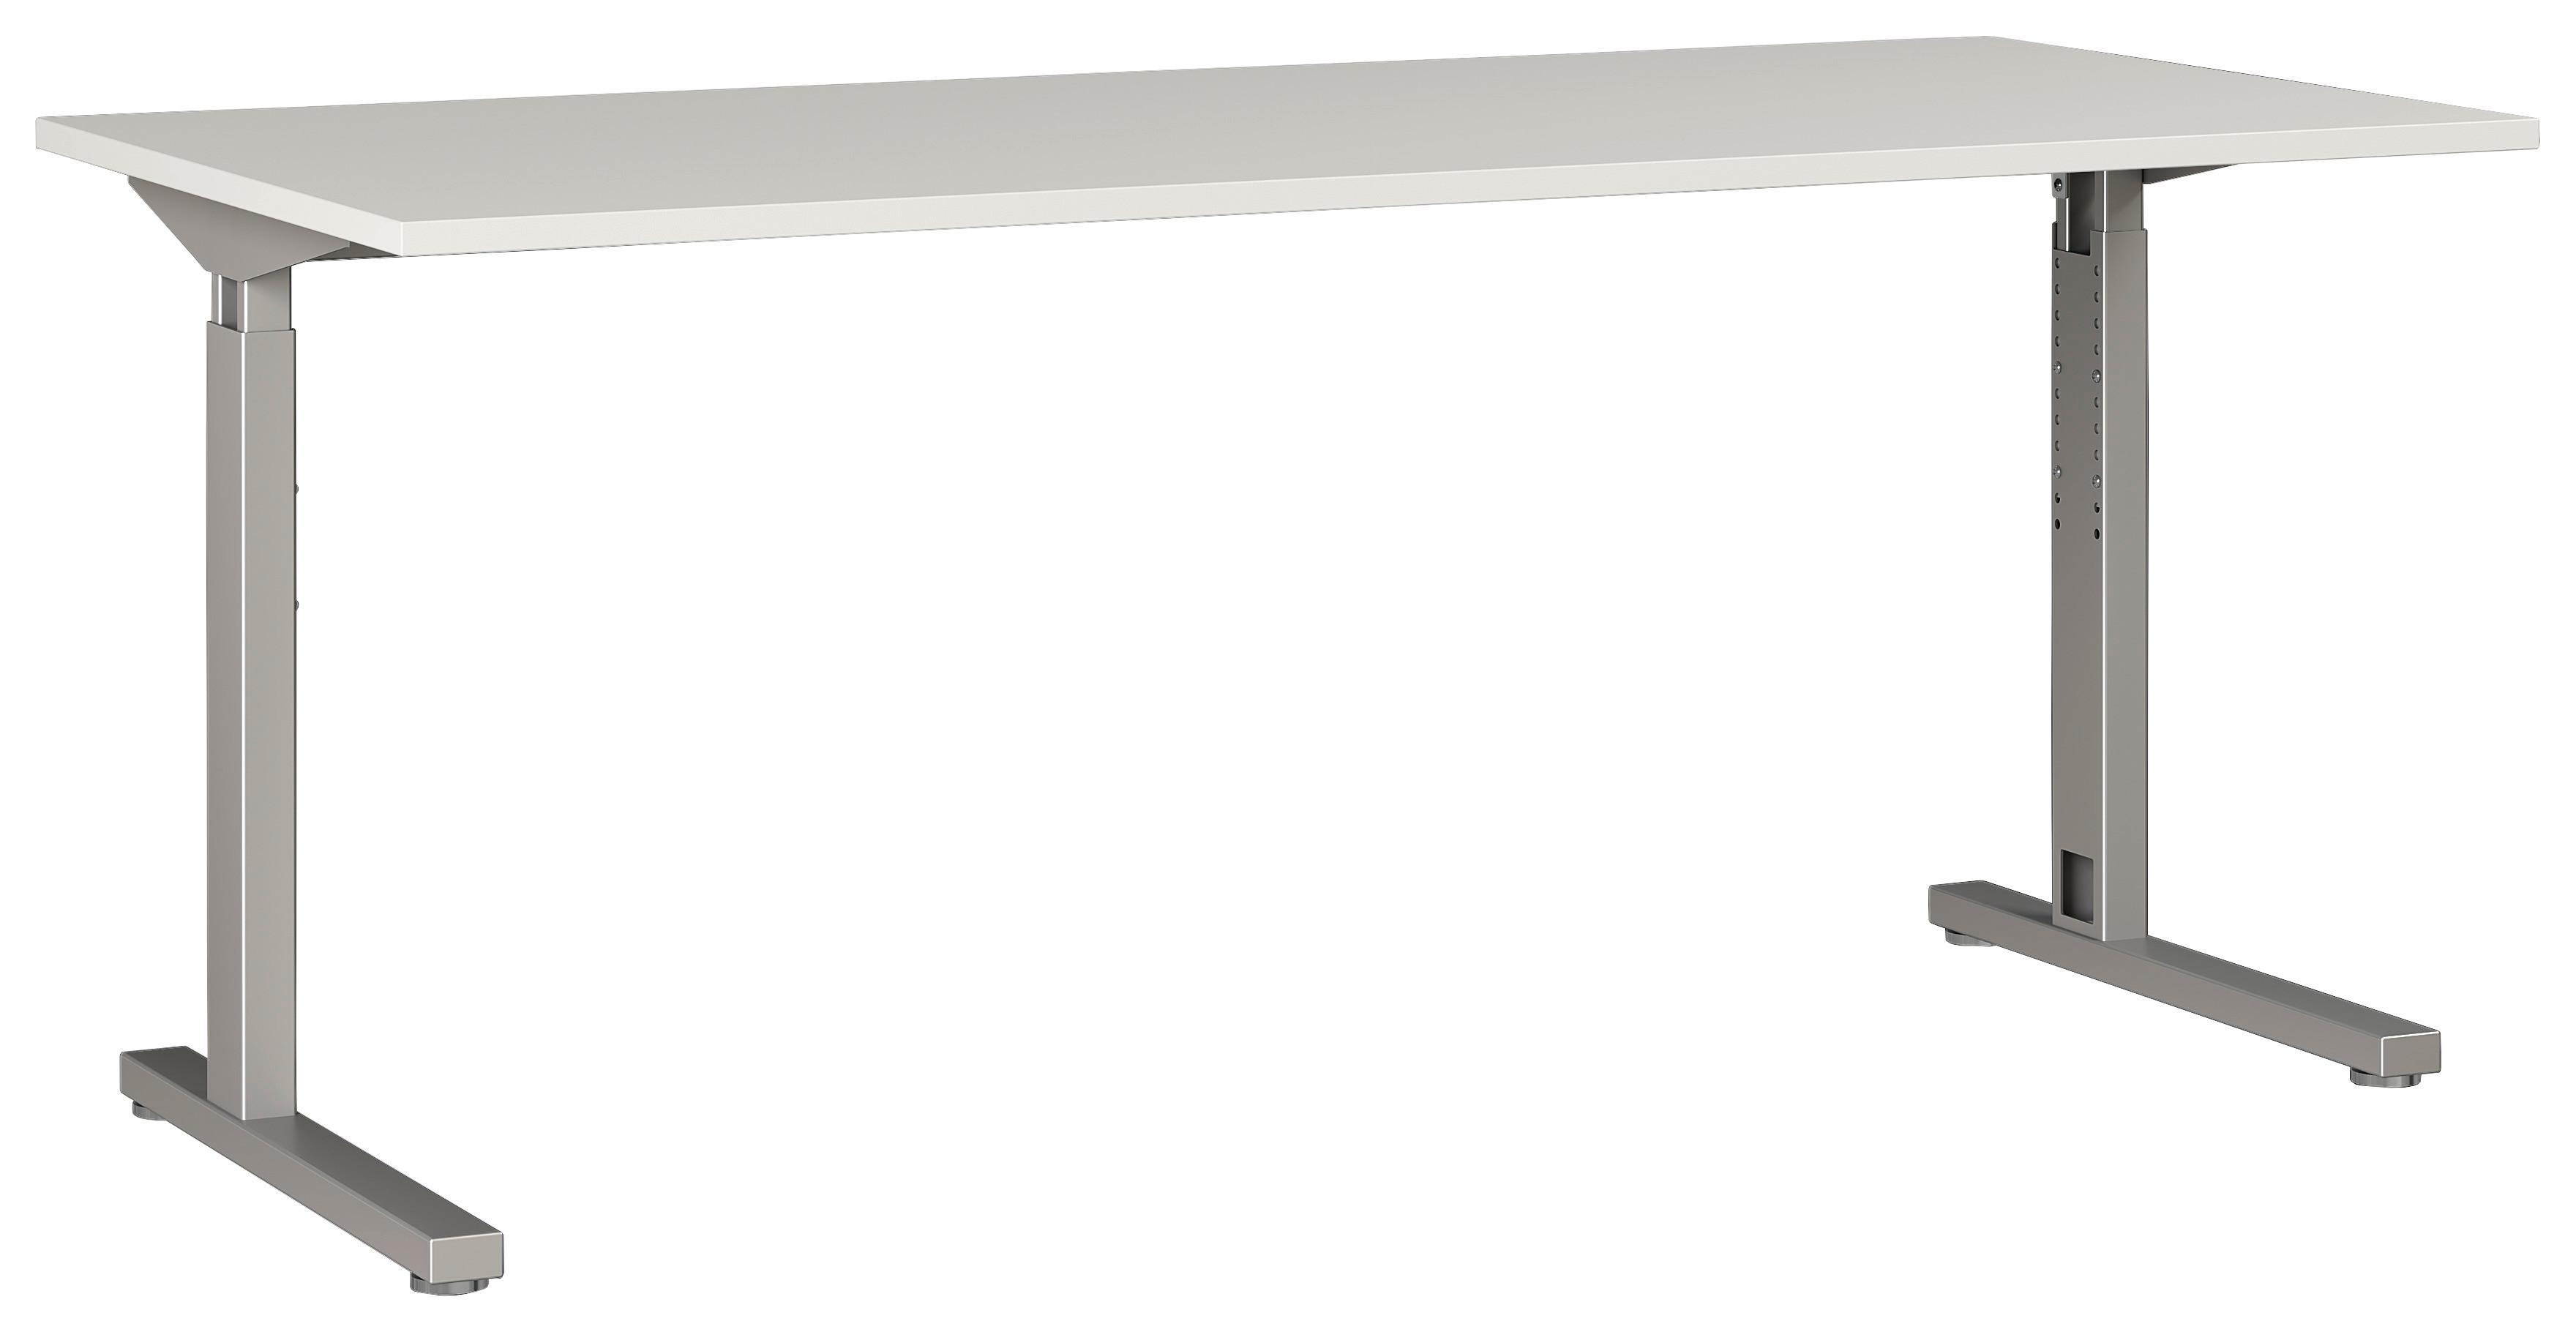 Schreibtisch B 160 H 70 cm Gw-Profi, Grau/Silberfarben - Silberfarben/Grau, KONVENTIONELL, Holzwerkstoff/Metall (160/80/70cm) - Germania